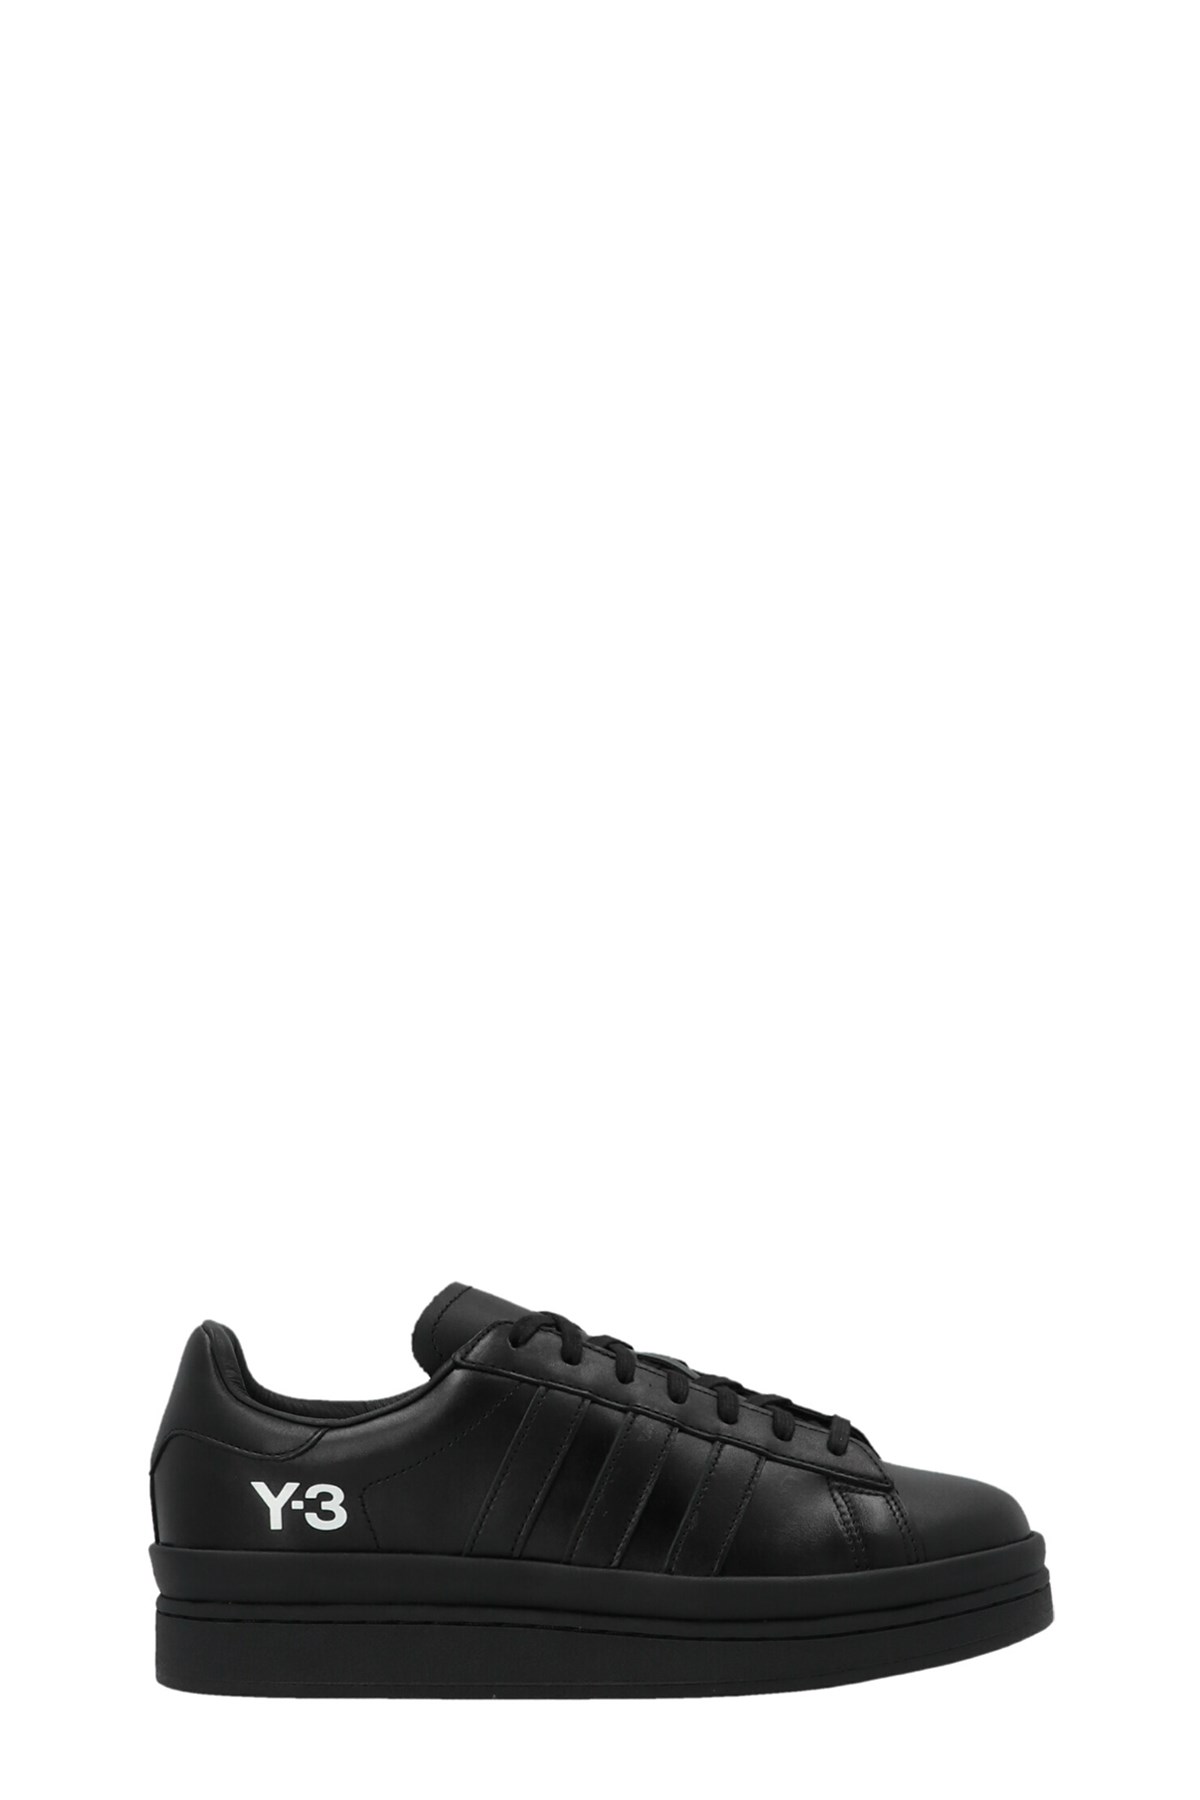 Y-3 'Hicho' Sneakers